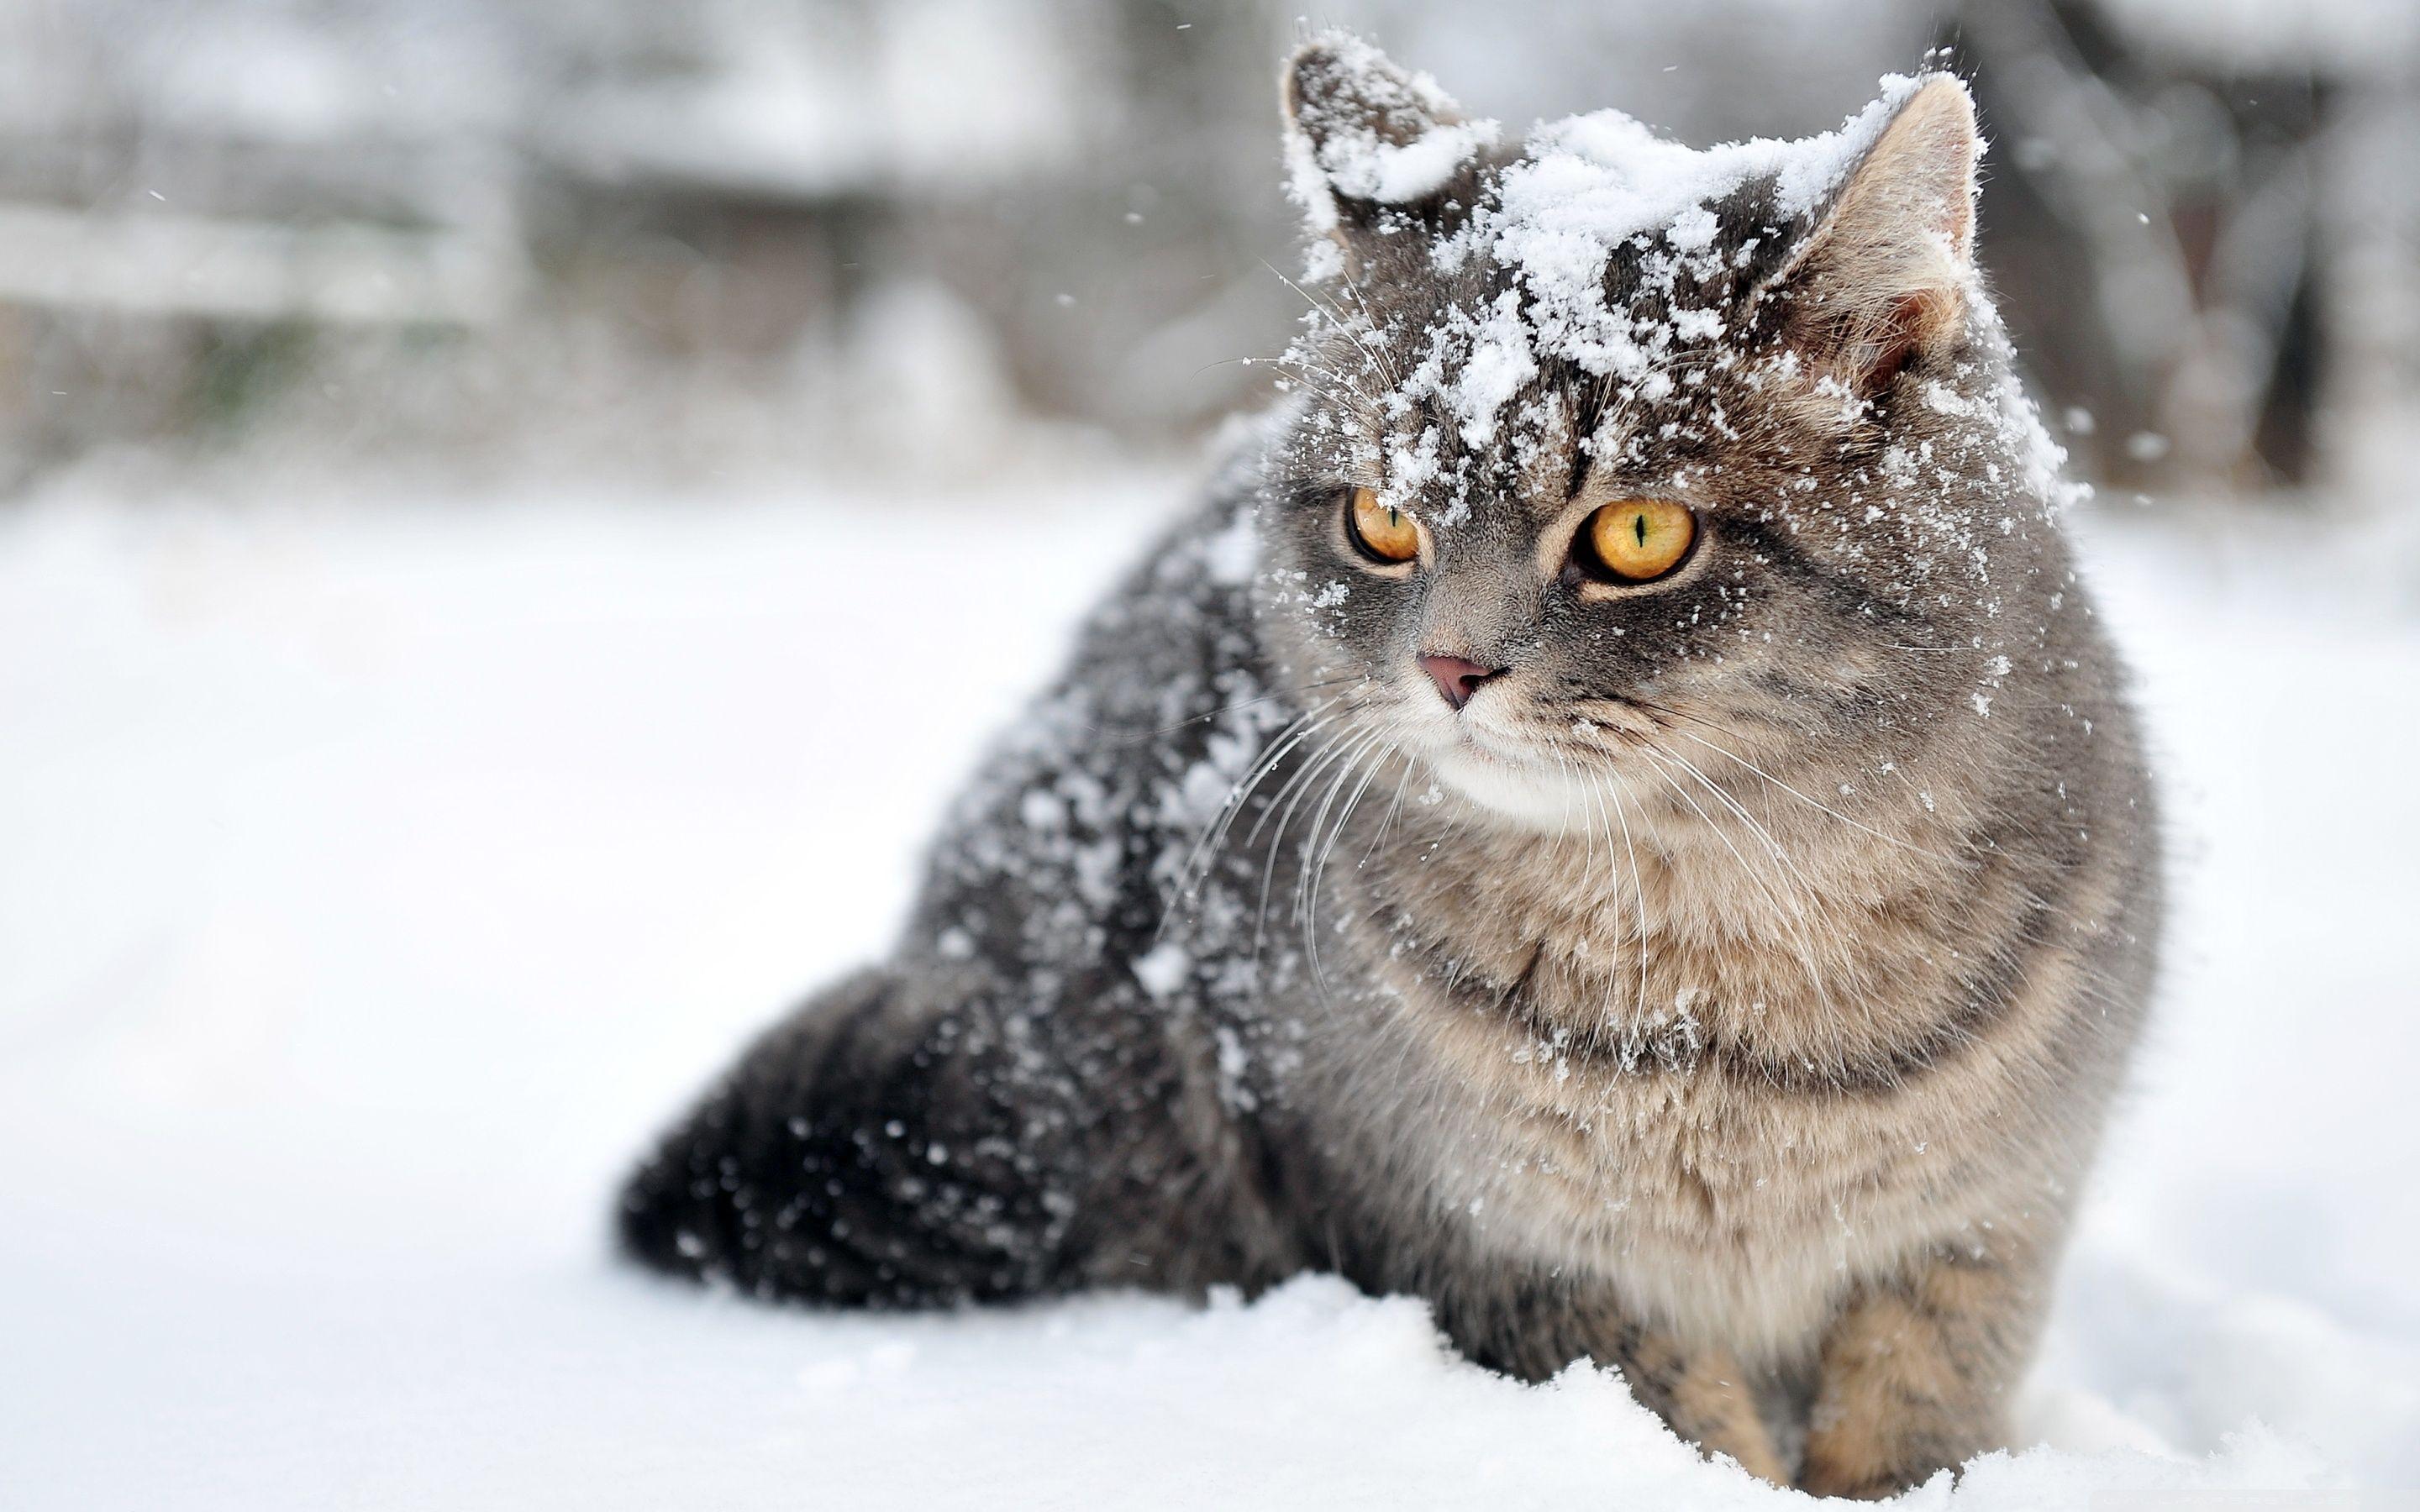 Tuyết và mèo là một tổ hợp tuyệt vời. Sự pha trộn giữa không khí lạnh giá và vẻ đẹp đáng yêu của các chú mèo sẽ làm cho bạn cảm thấy thích thú và khám phá những khoảnh khắc đẹp nhất của mùa đông. Hãy nhấn play để thưởng thức những hình ảnh đẹp mắt của tuyết và mèo!